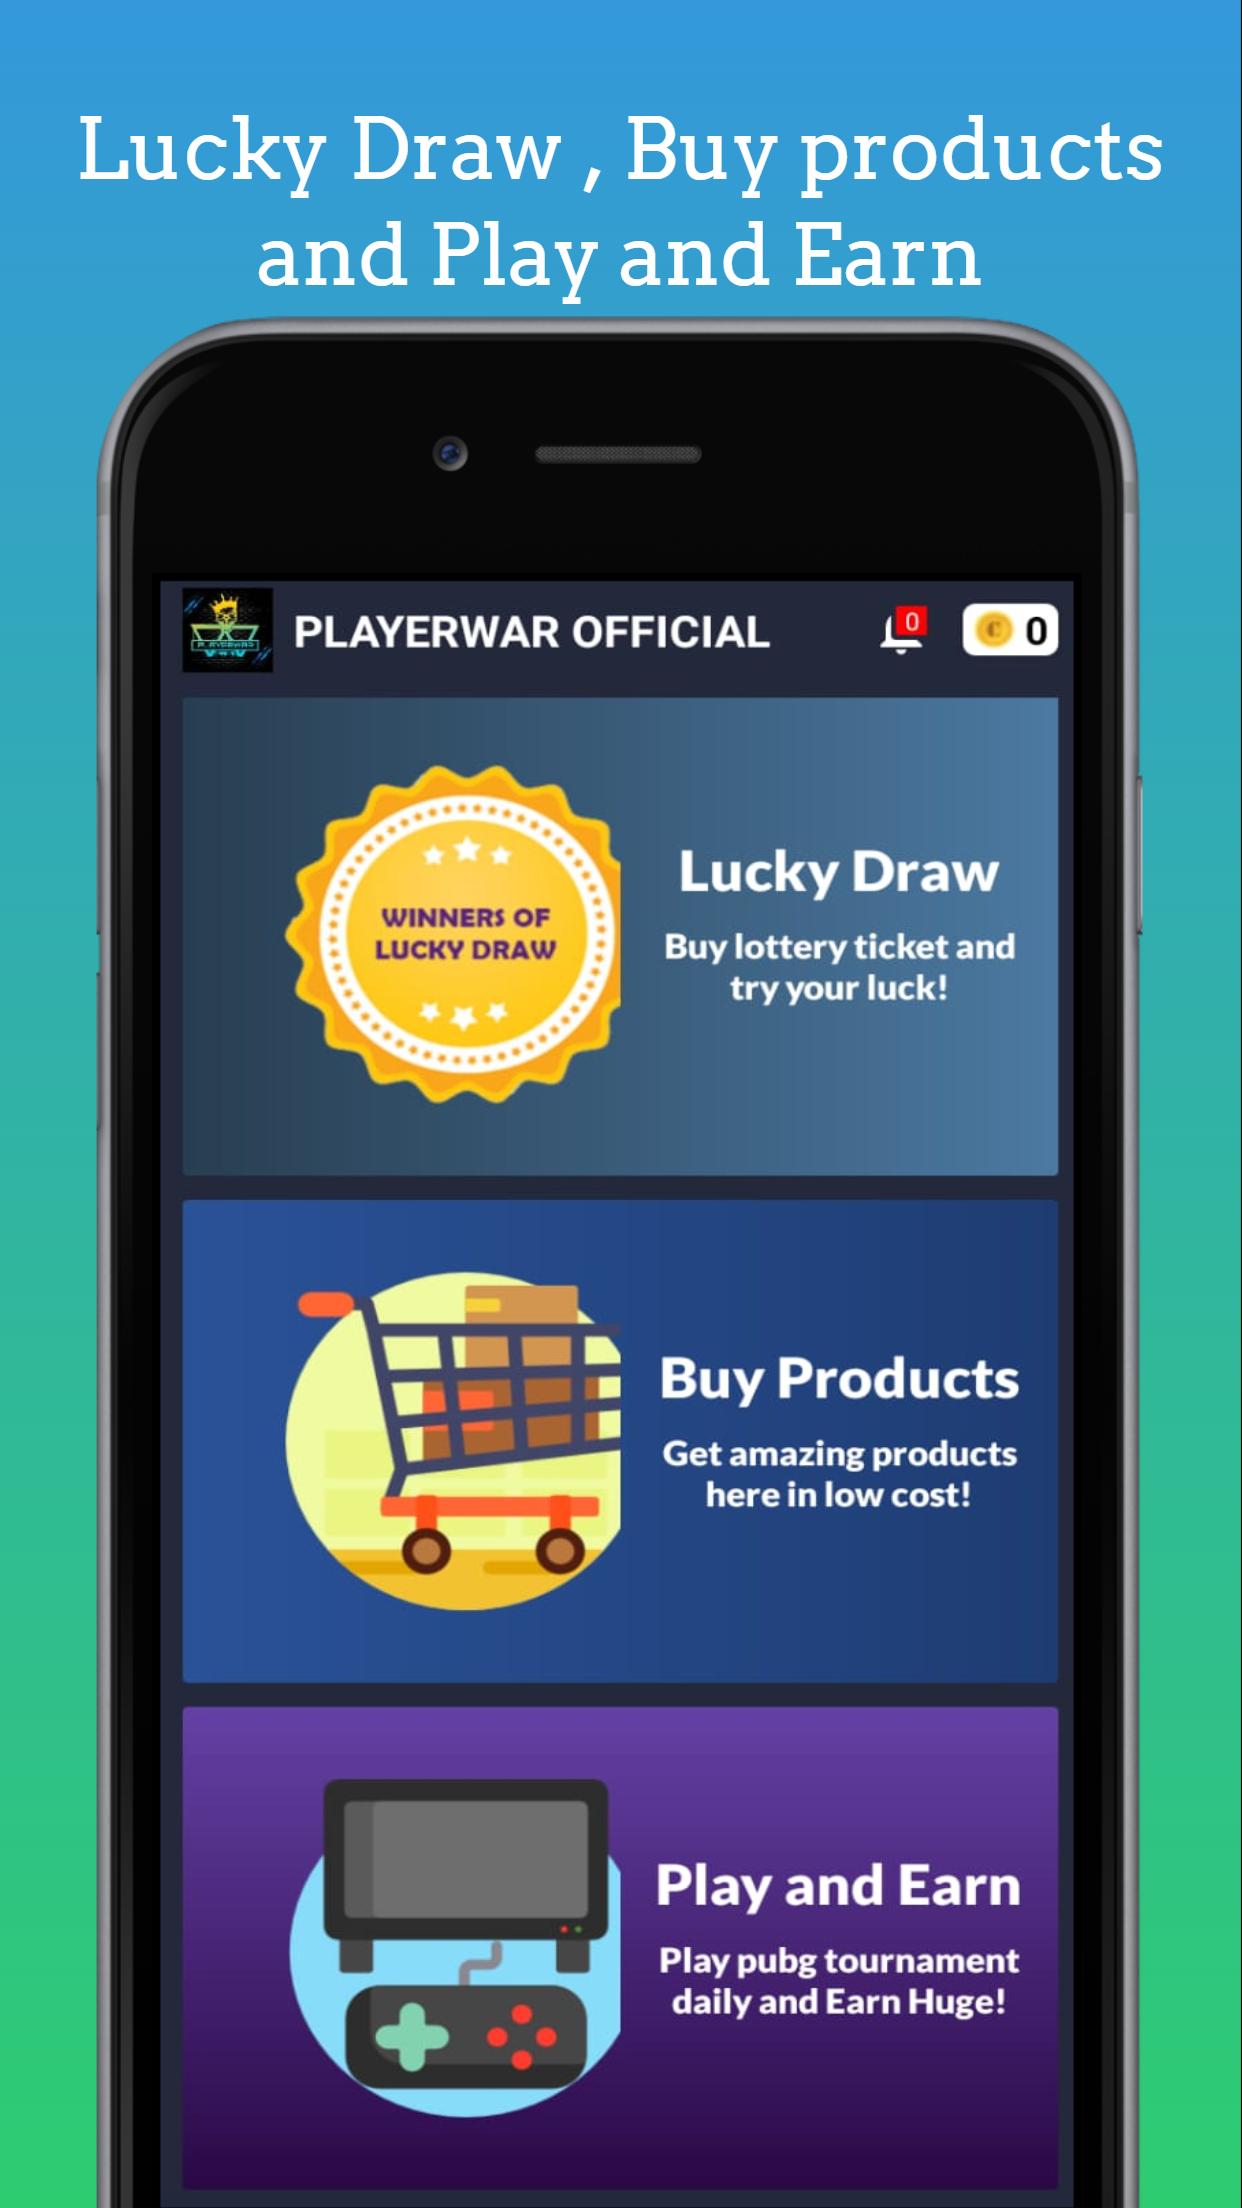 Playerwar - An eSports Tournament Platform 1.1.6 Screenshot 6